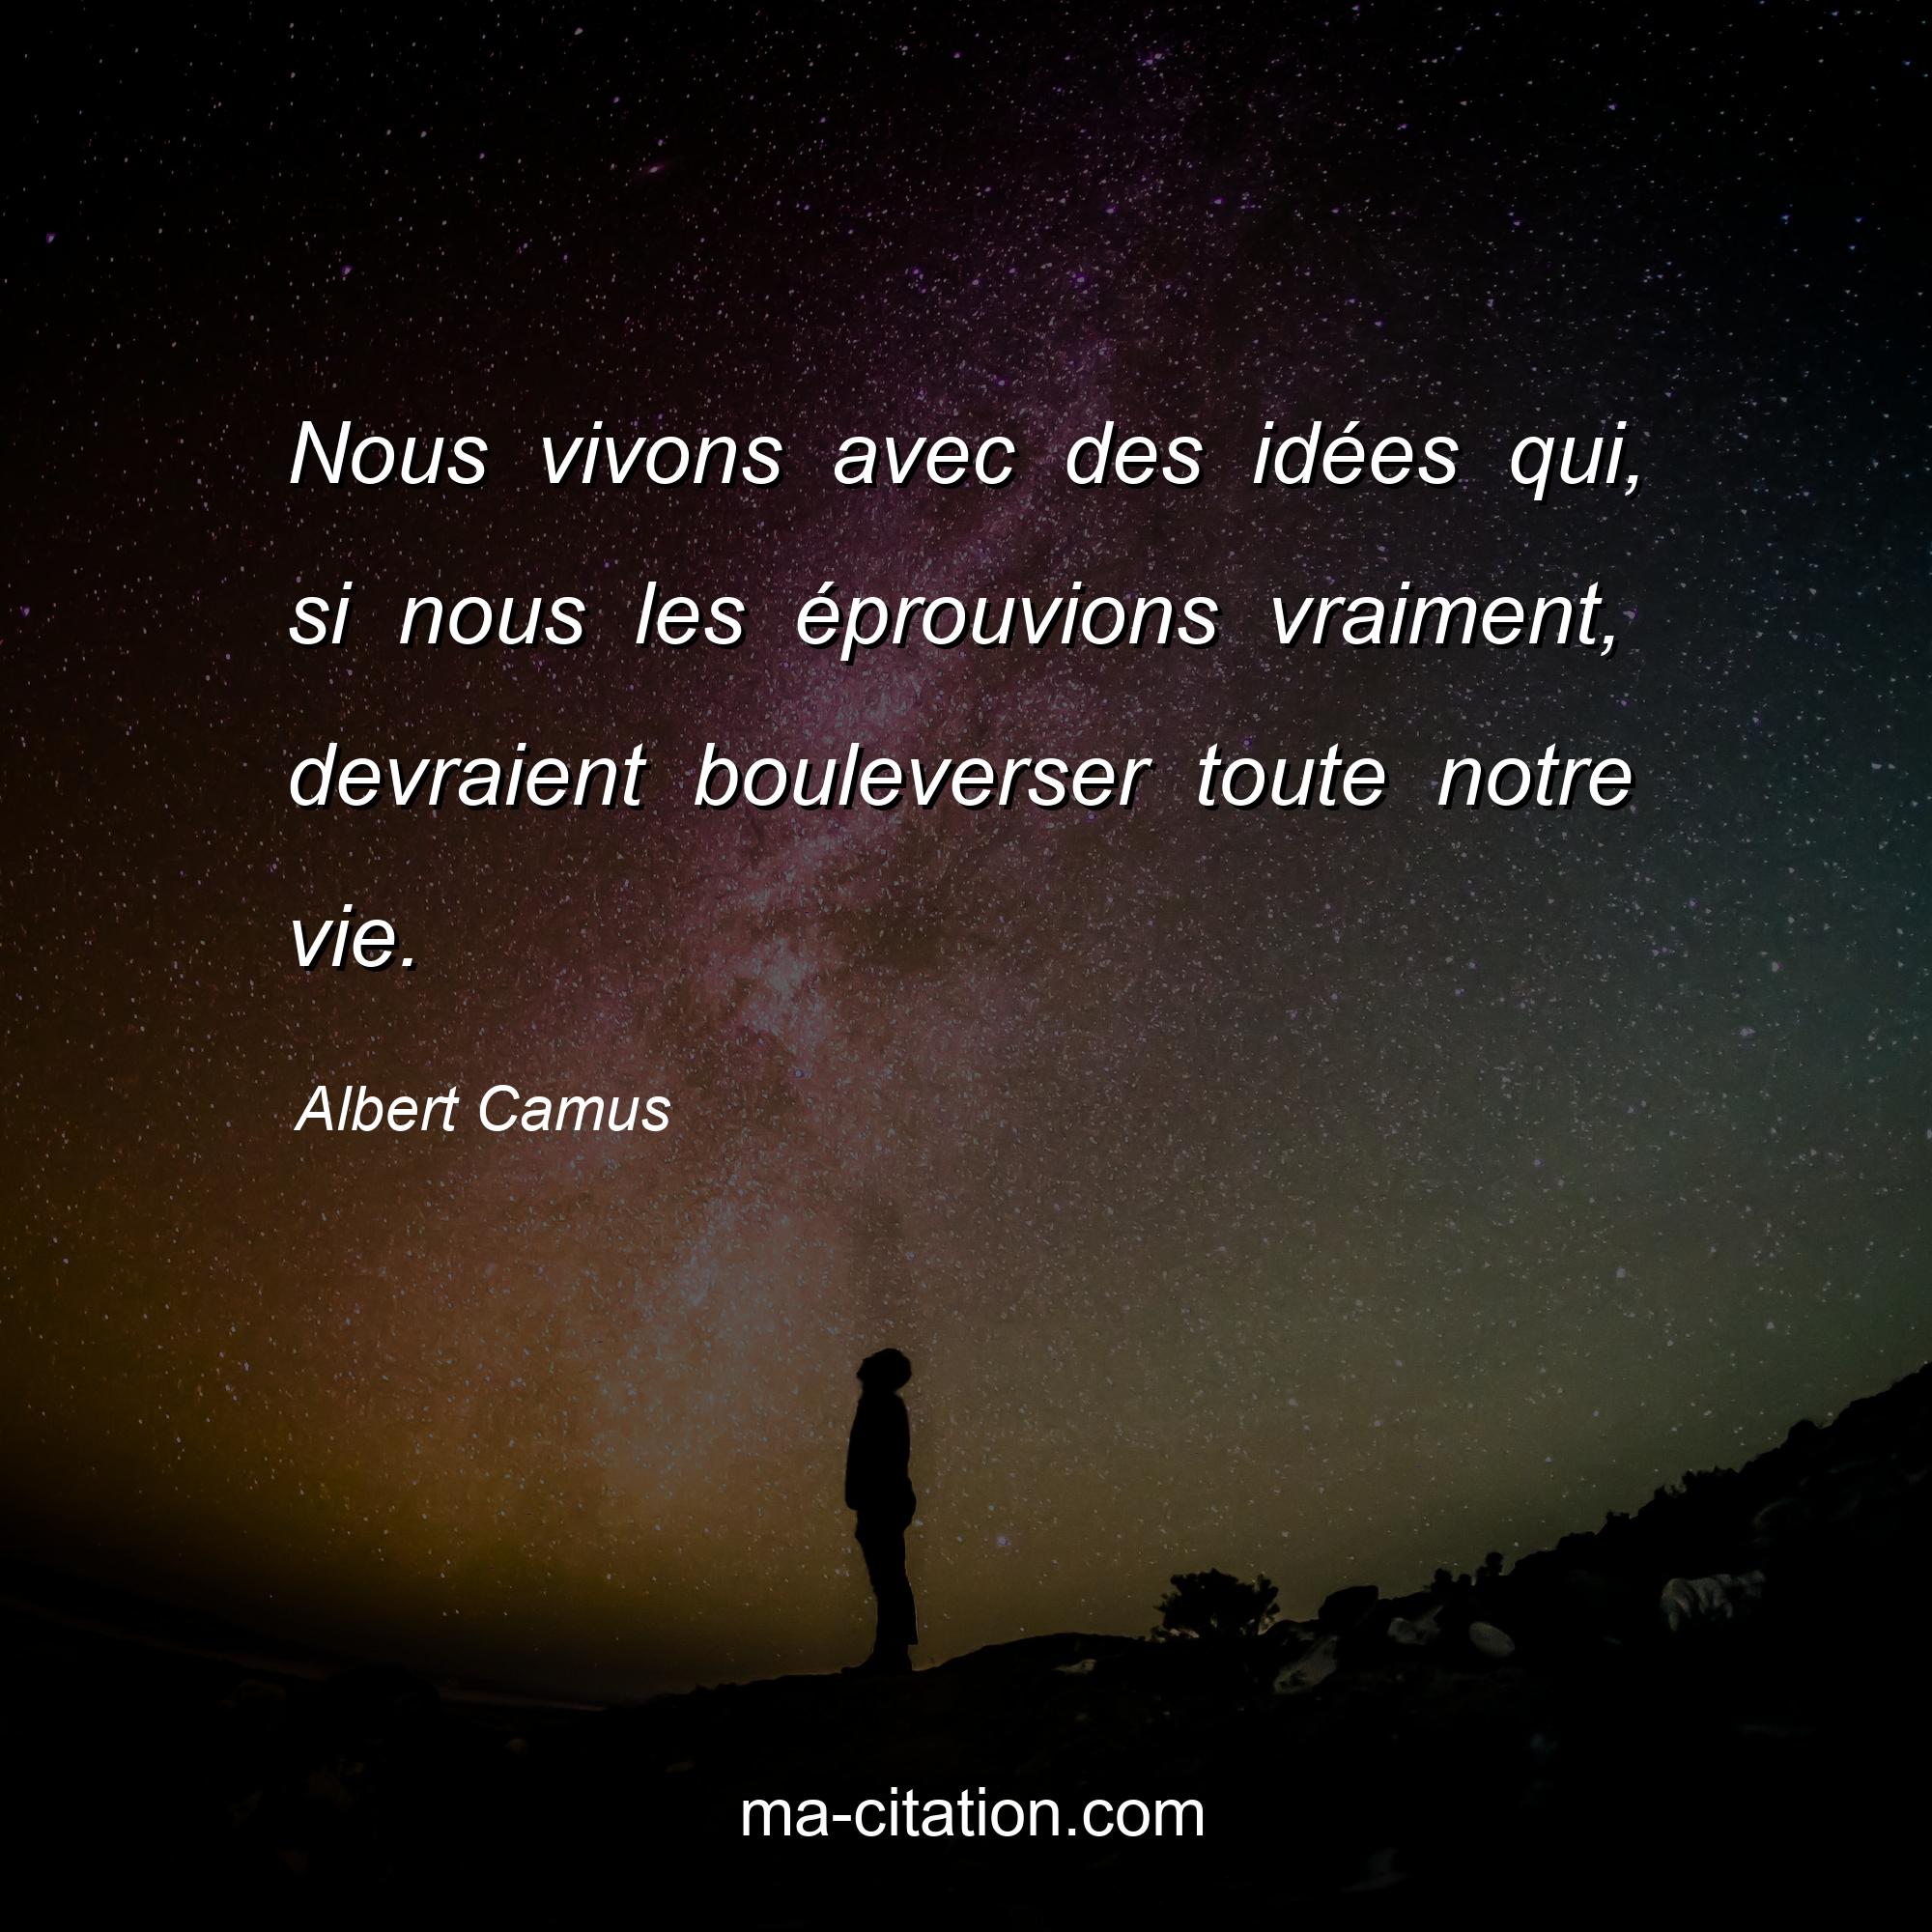 Albert Camus : Nous vivons avec des idées qui, si nous les éprouvions vraiment, devraient bouleverser toute notre vie.